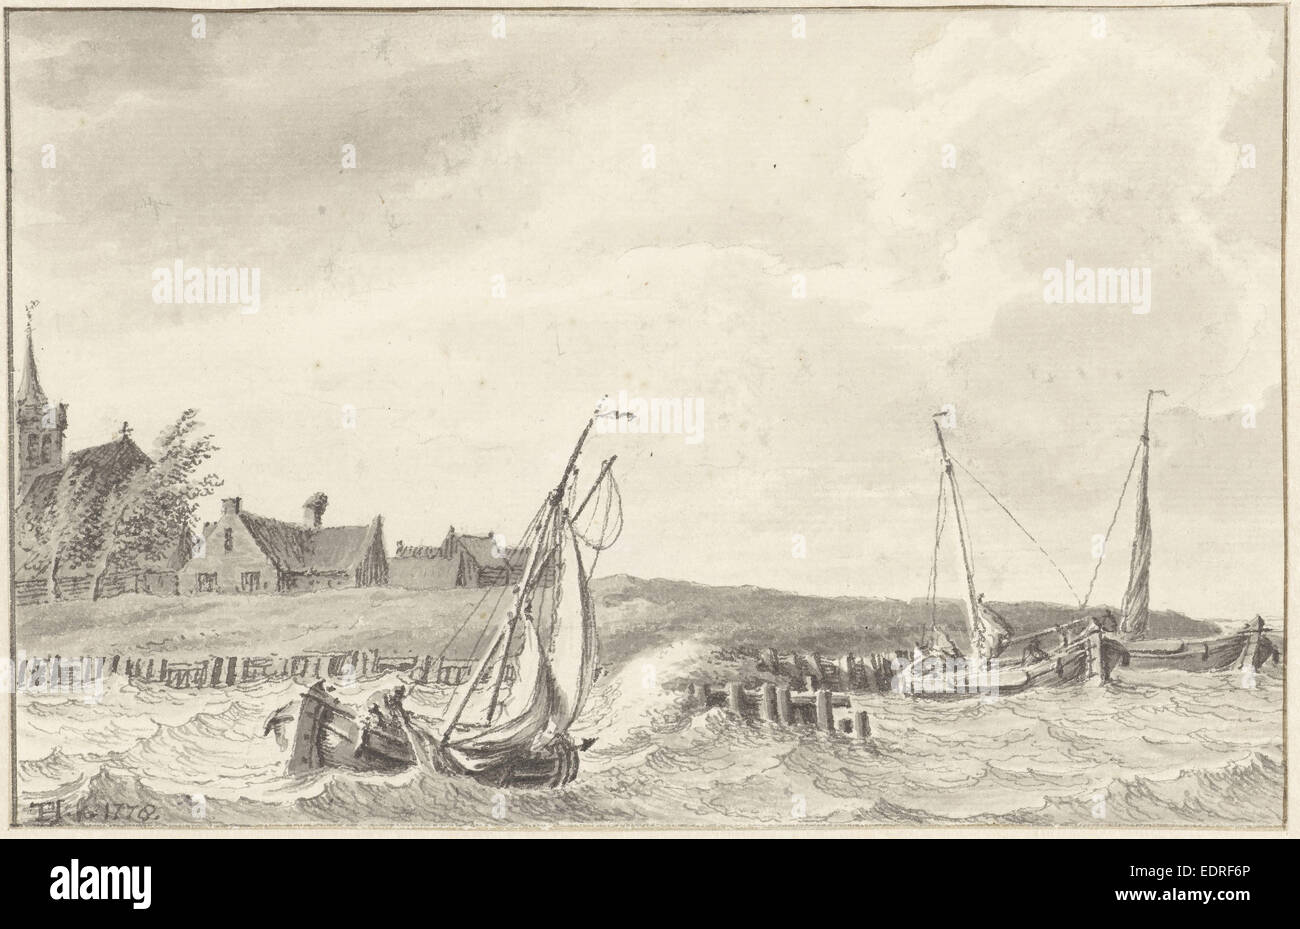 Boats at a dike, Tako Hajo Jelgersma, 1778 Stock Photo - Alamy